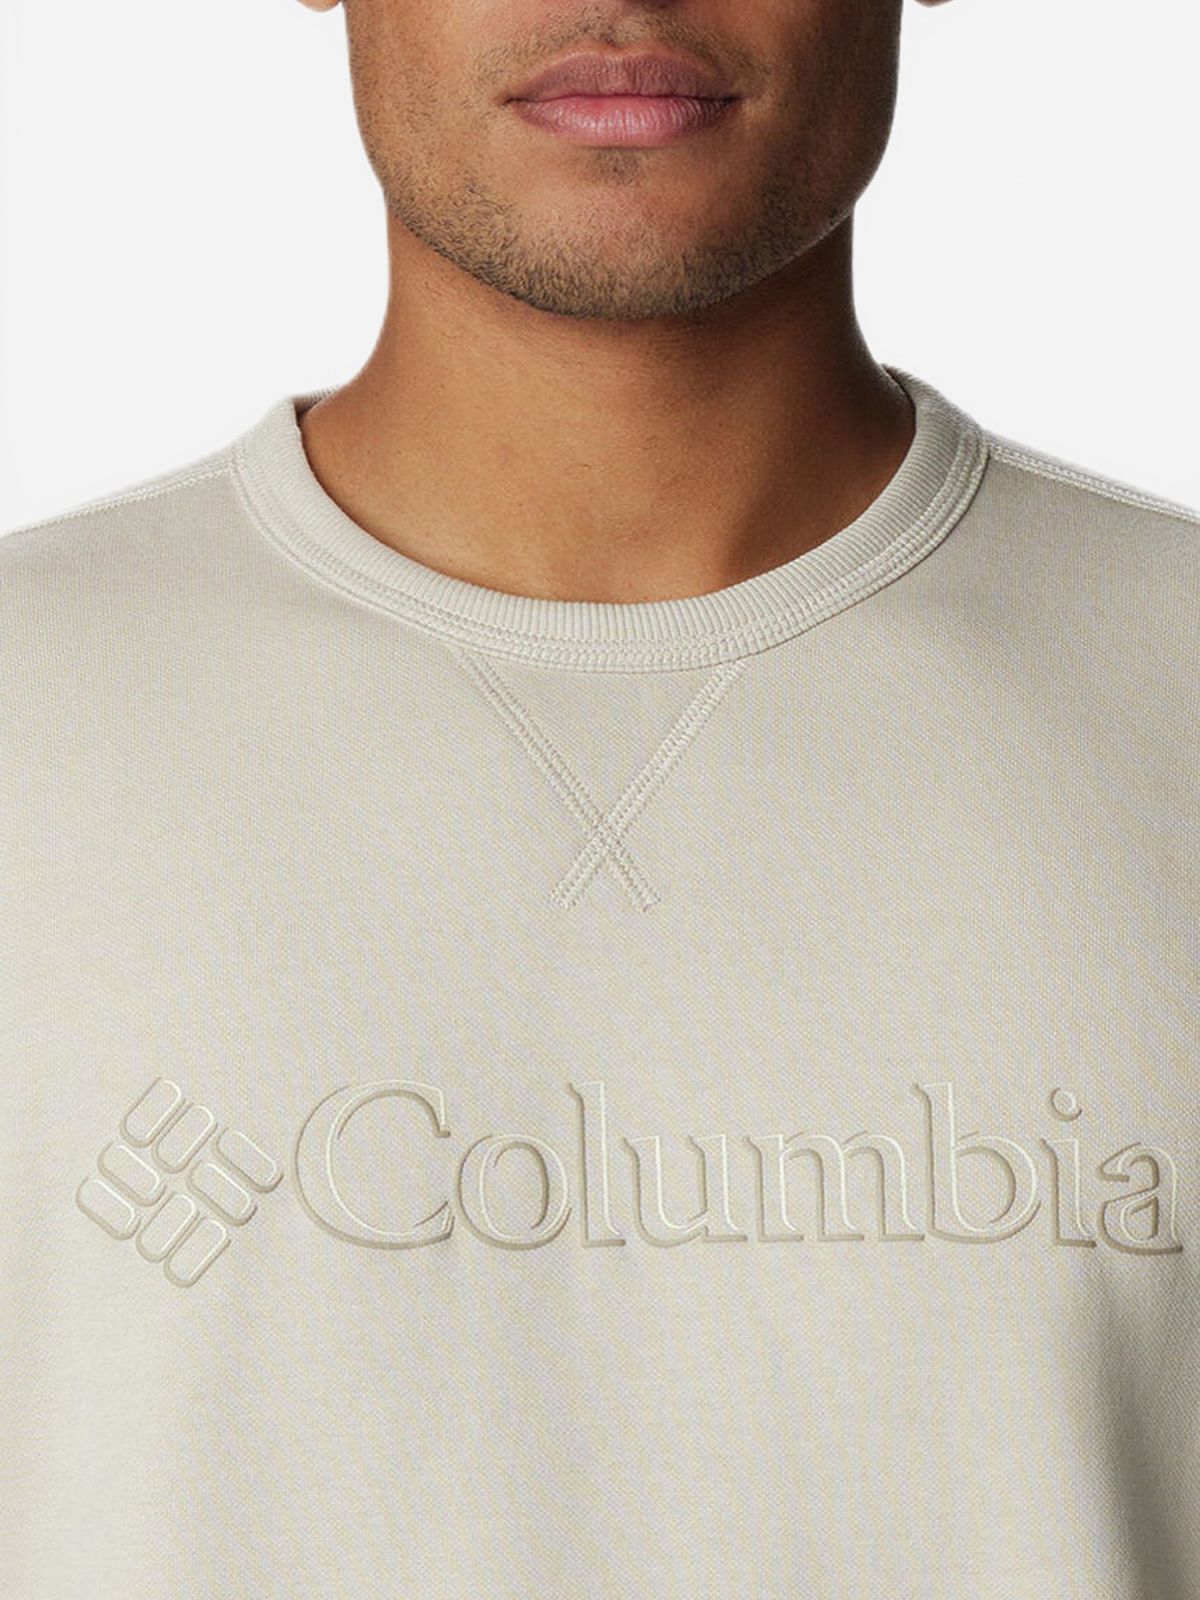  סווטשירט עם לוגו של COLUMBIA